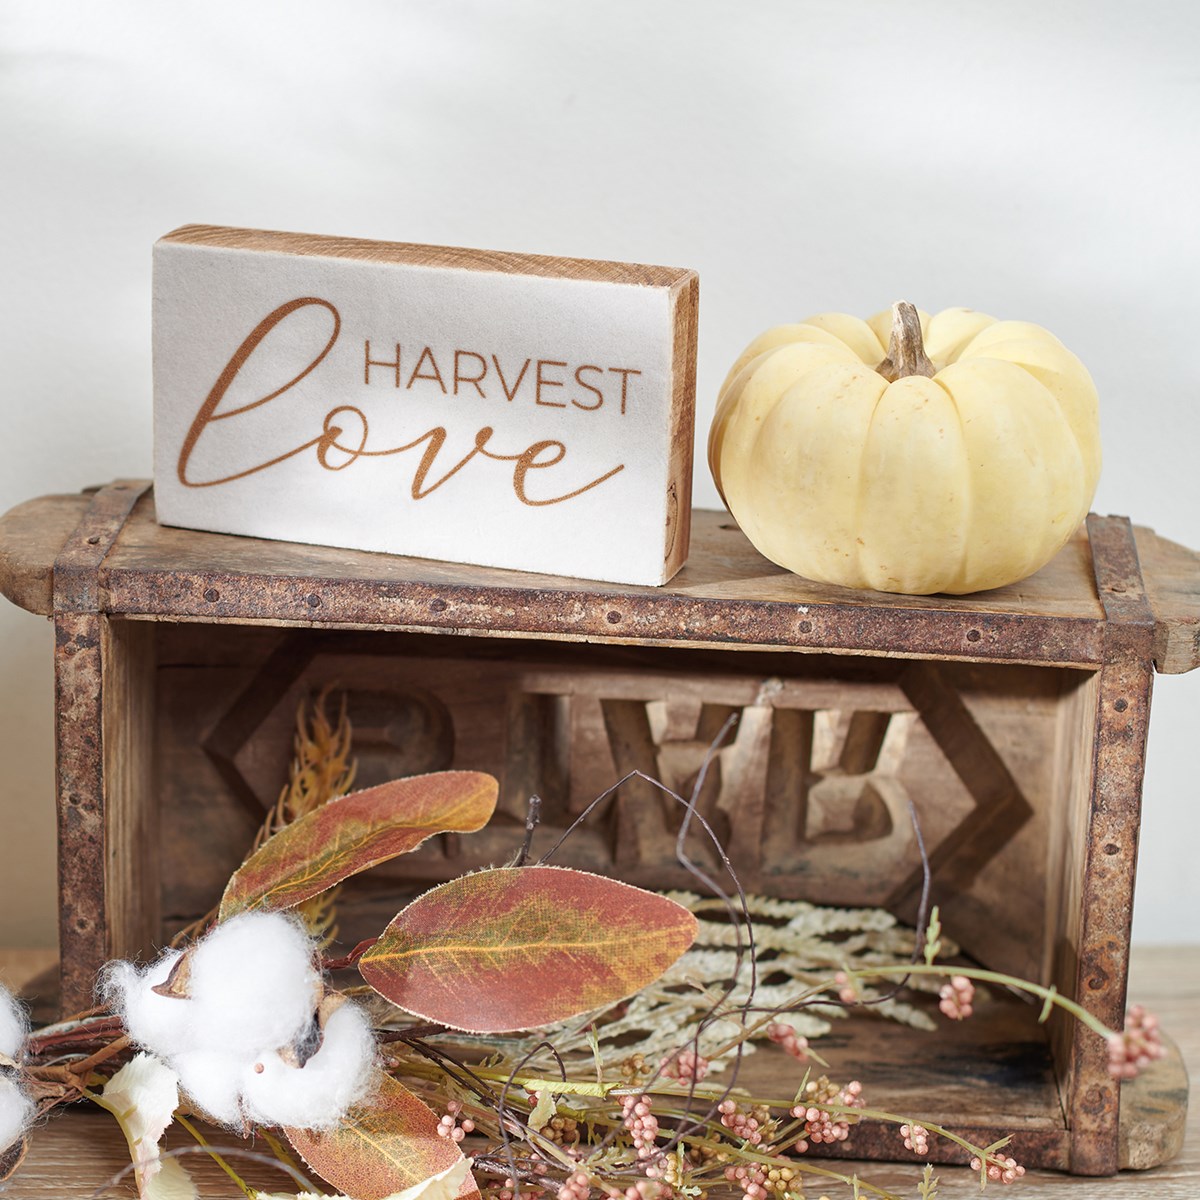 Harvest Love Block Sign - Wood, Velvet